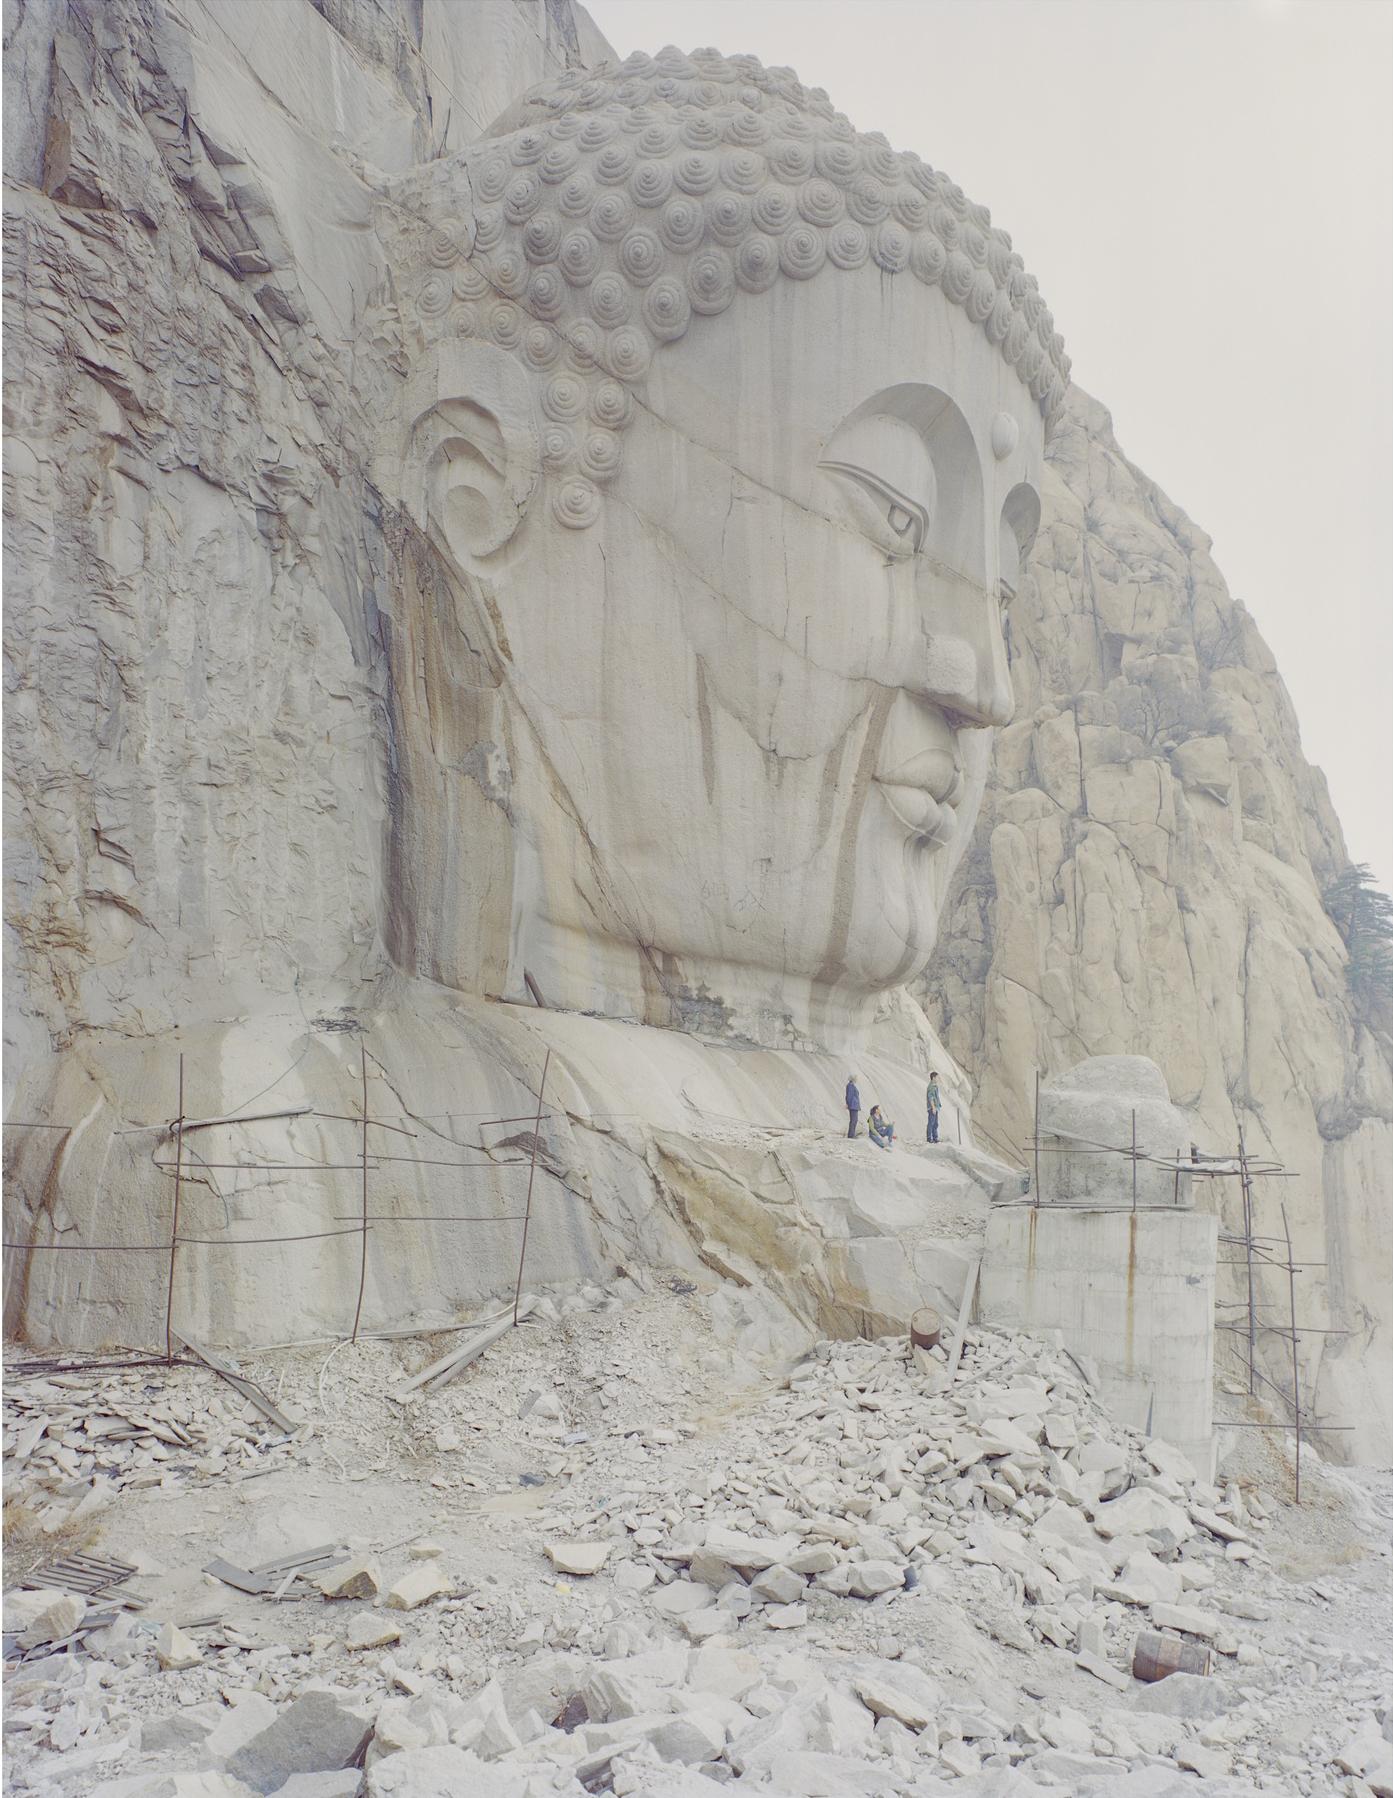 Buddhakopf im Berg, 2015 - Zhang Kechun (Landschaftsfotografie in Farbe)
Signiert und nummeriert auf der Rückseite
Archivierungs-Pigmentdruck

Erhältlich in mehreren Größen: 
35 1/2 x 43 Zoll, Auflage: 7 + 1 AP
42 1/2 x 52 3/4 Zoll, Auflage: 5 + 1